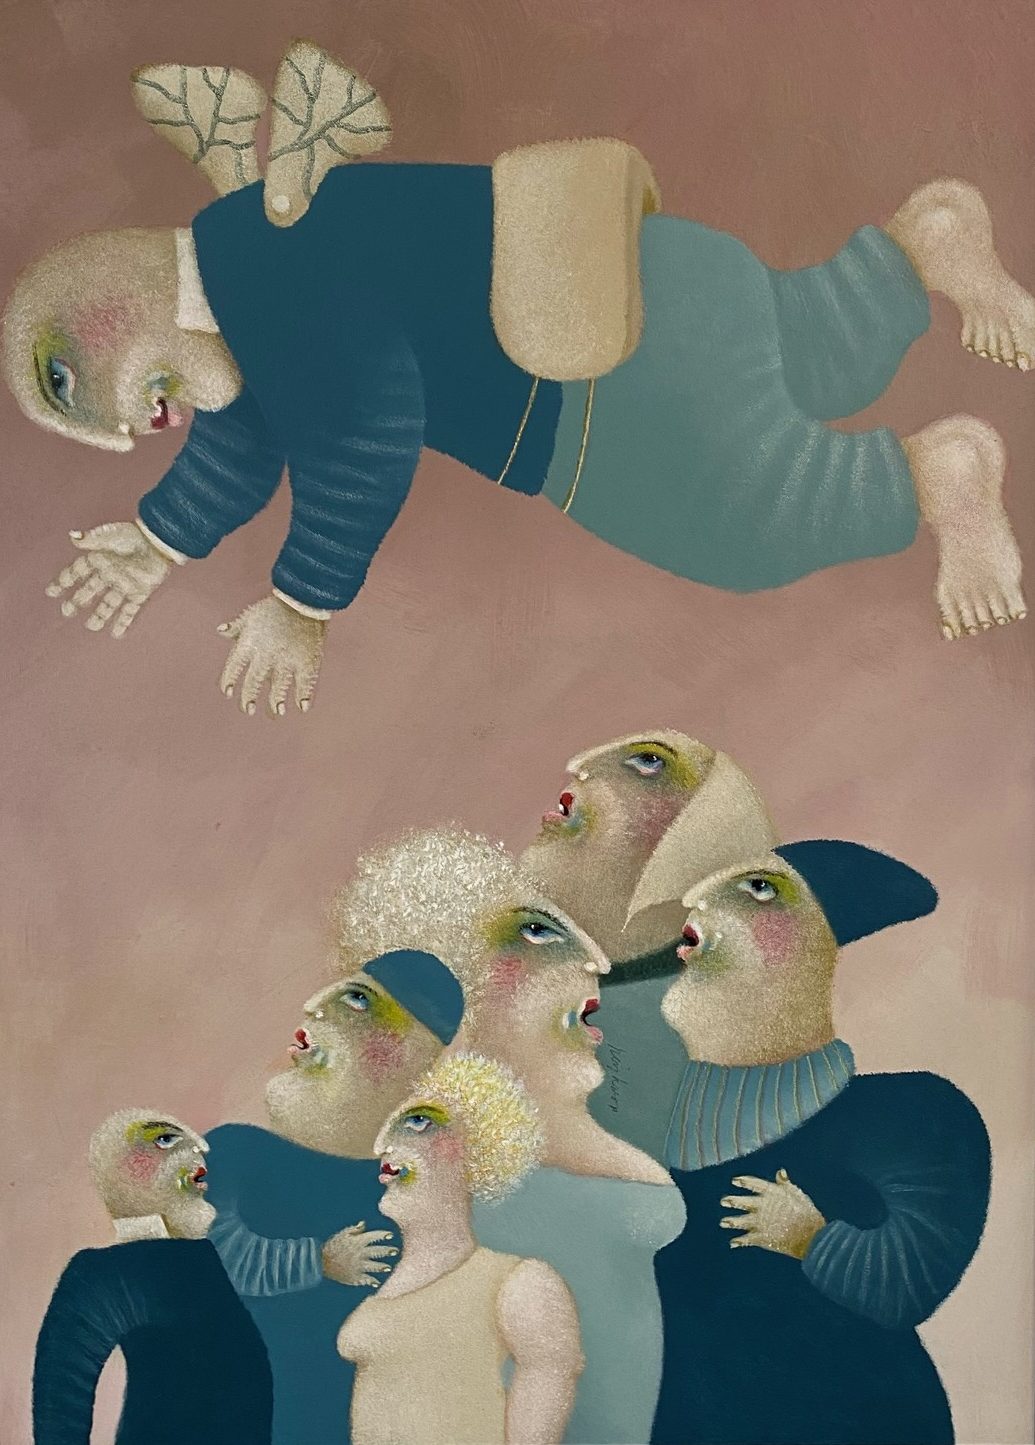 Gemälde von einer Gruppe von Personen und einer Person mit Flügeln.